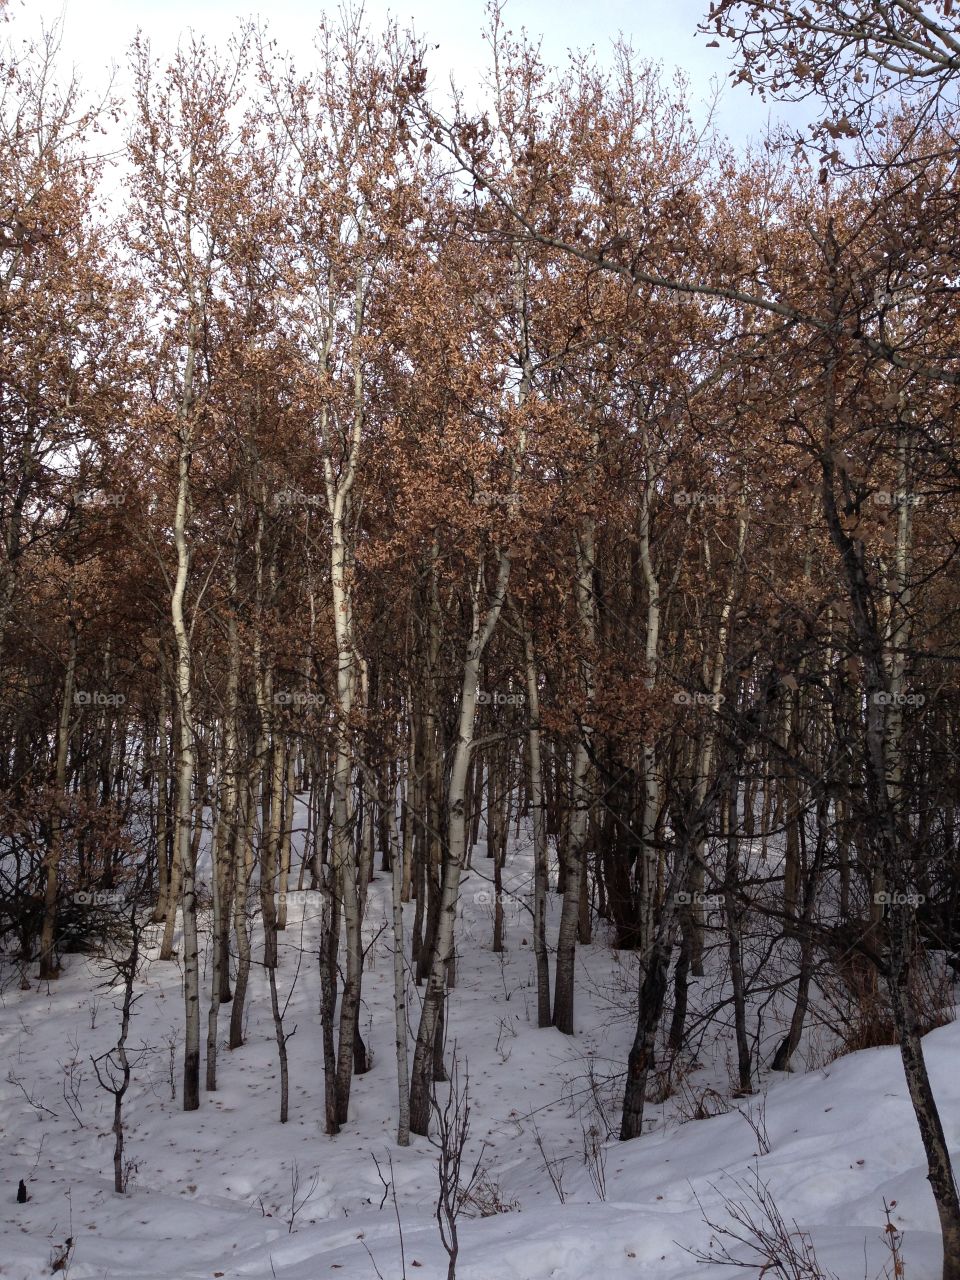 Aspen trees in winter. 